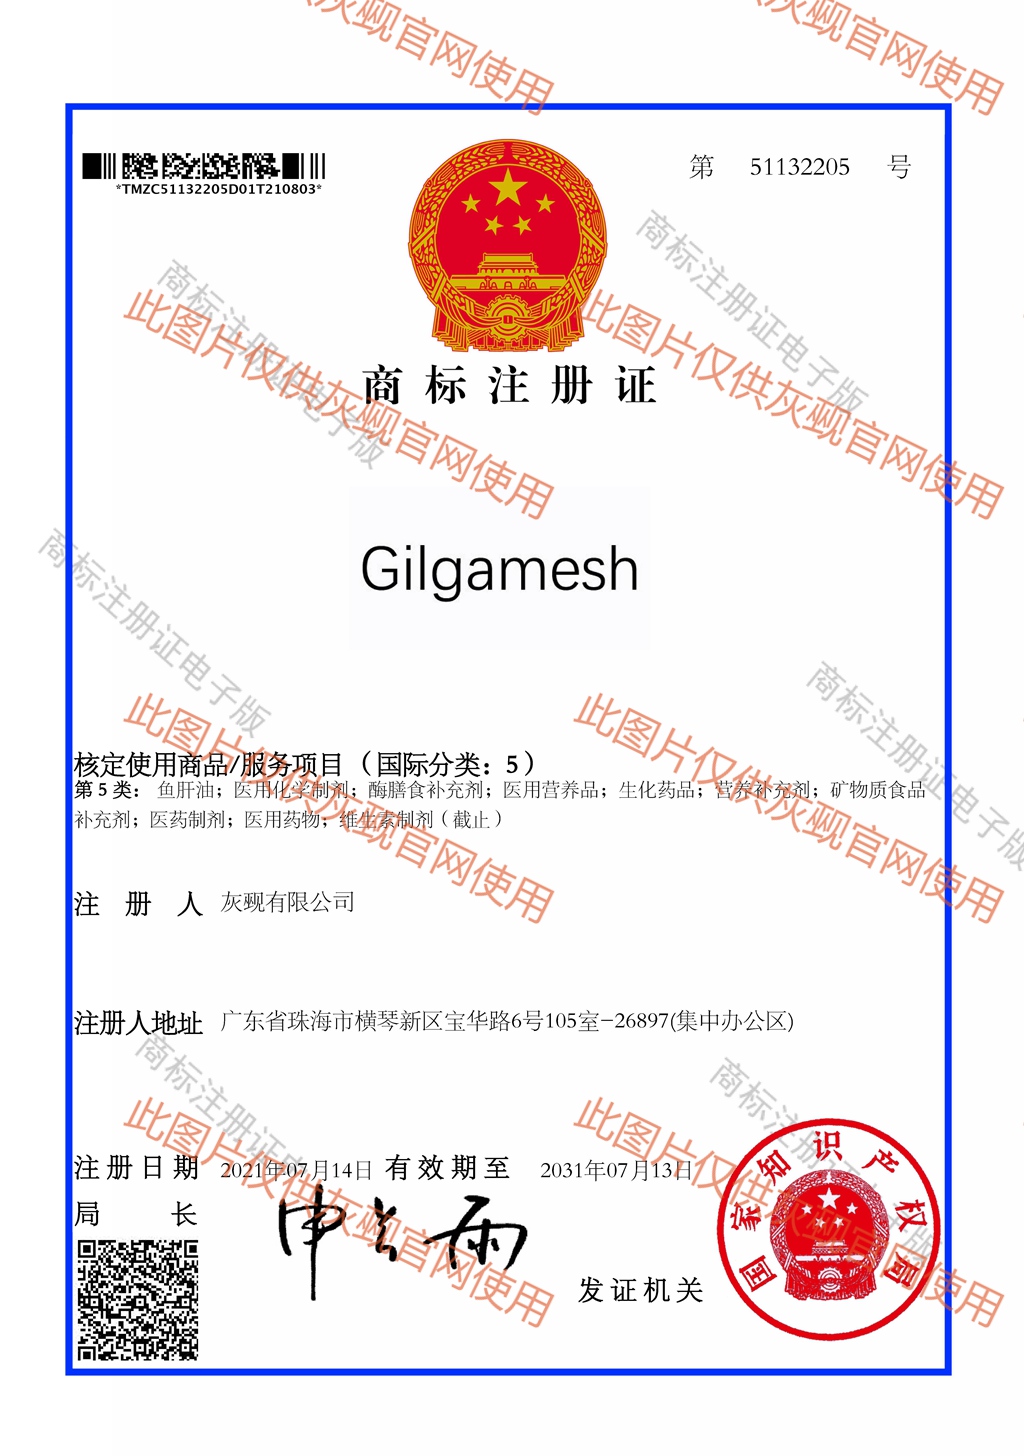 灰觋有限公司 Gilgamesh 9类51132205注册证.jpg